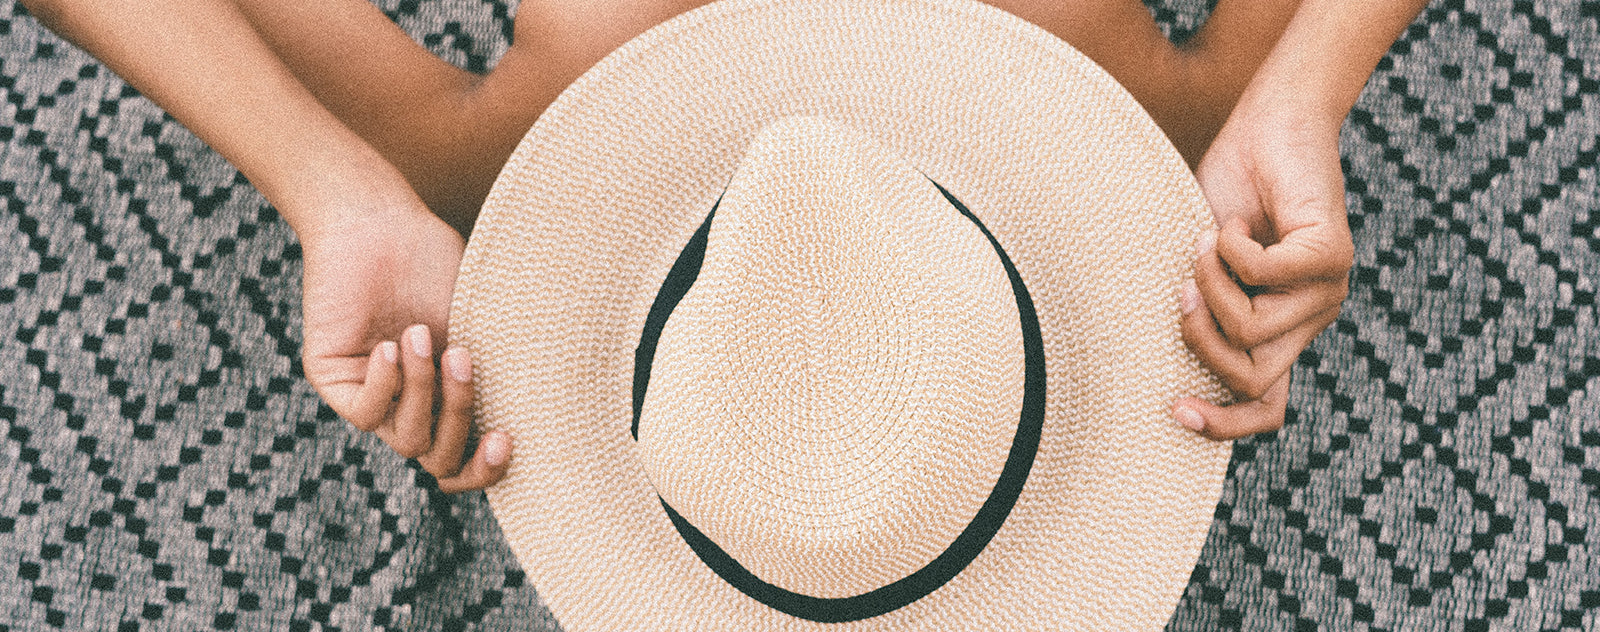 Les Chapeaux de Paille sont-ils une bonne protection contre le soleil ?